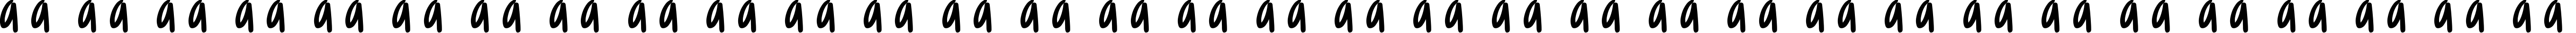 Пример написания русского алфавита шрифтом Margarosa